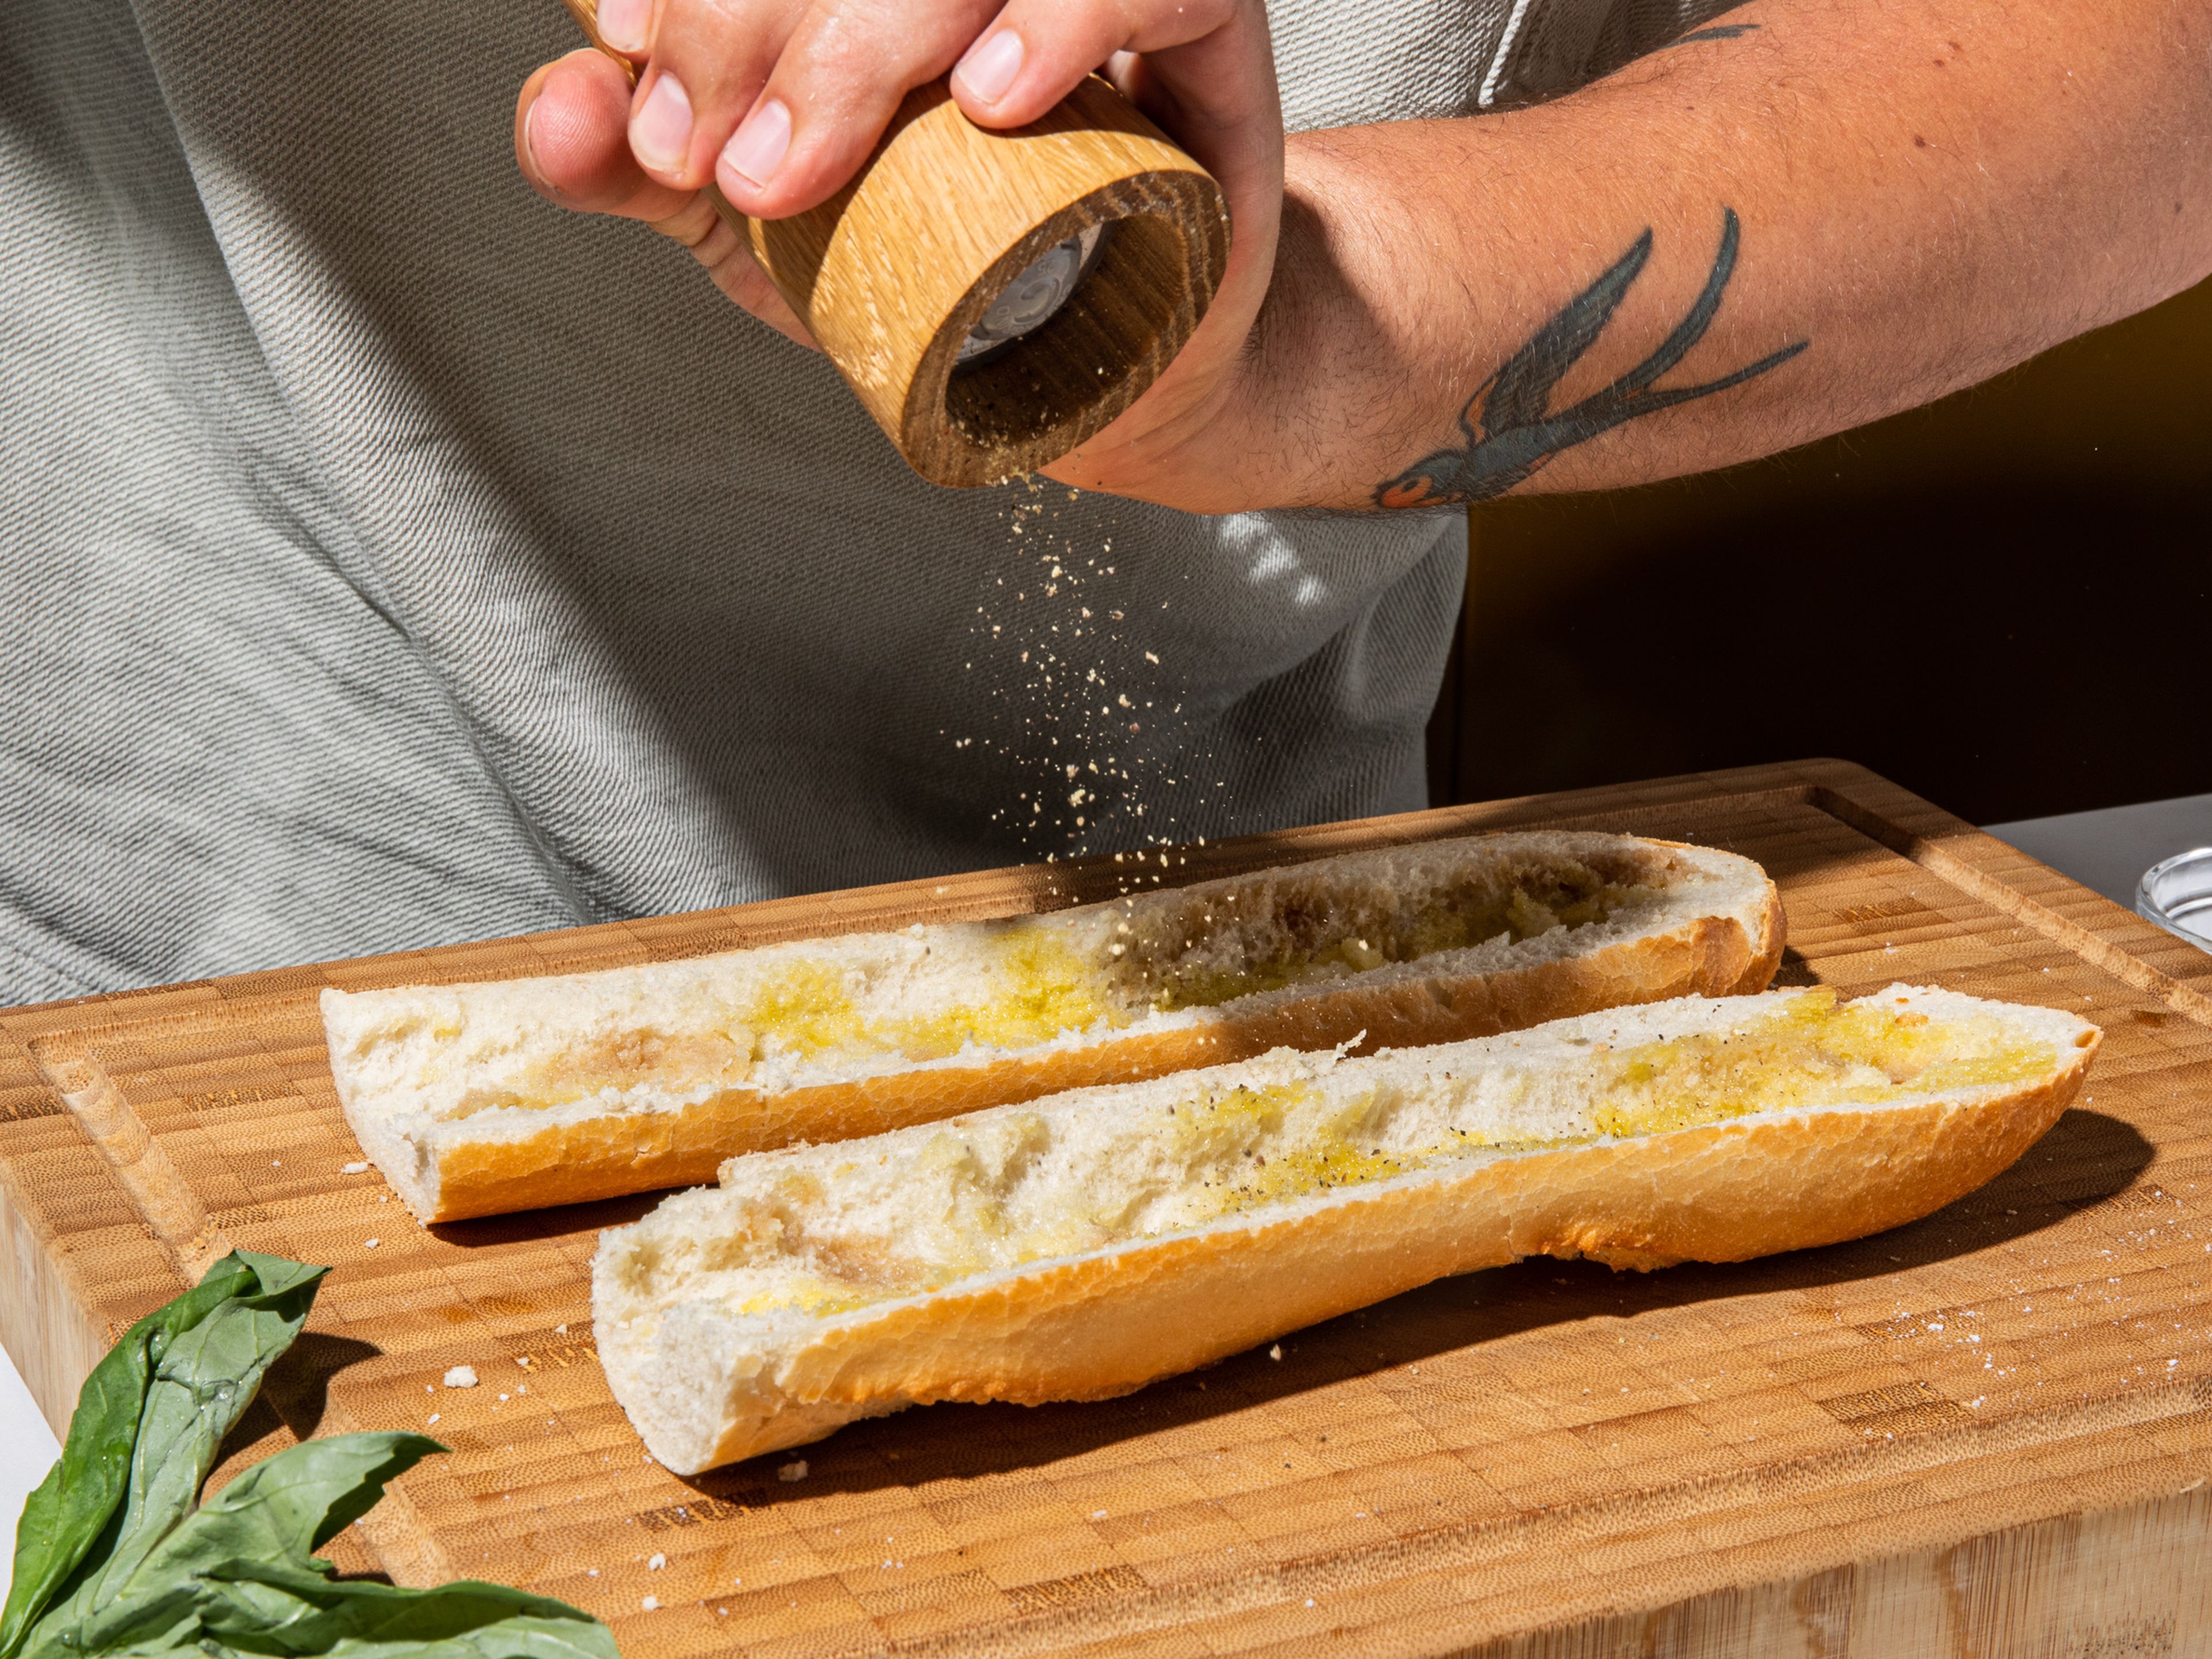 Das Baguette der Länge nach aufschneiden und etwas von der weichen Krume an der Ober- und Unterseite des Brotes entfernen, um Platz für die Füllungen zu schaffen. Mit Olivenöl und Essig beträufeln und mit Salz und Pfeffer bestreuen.